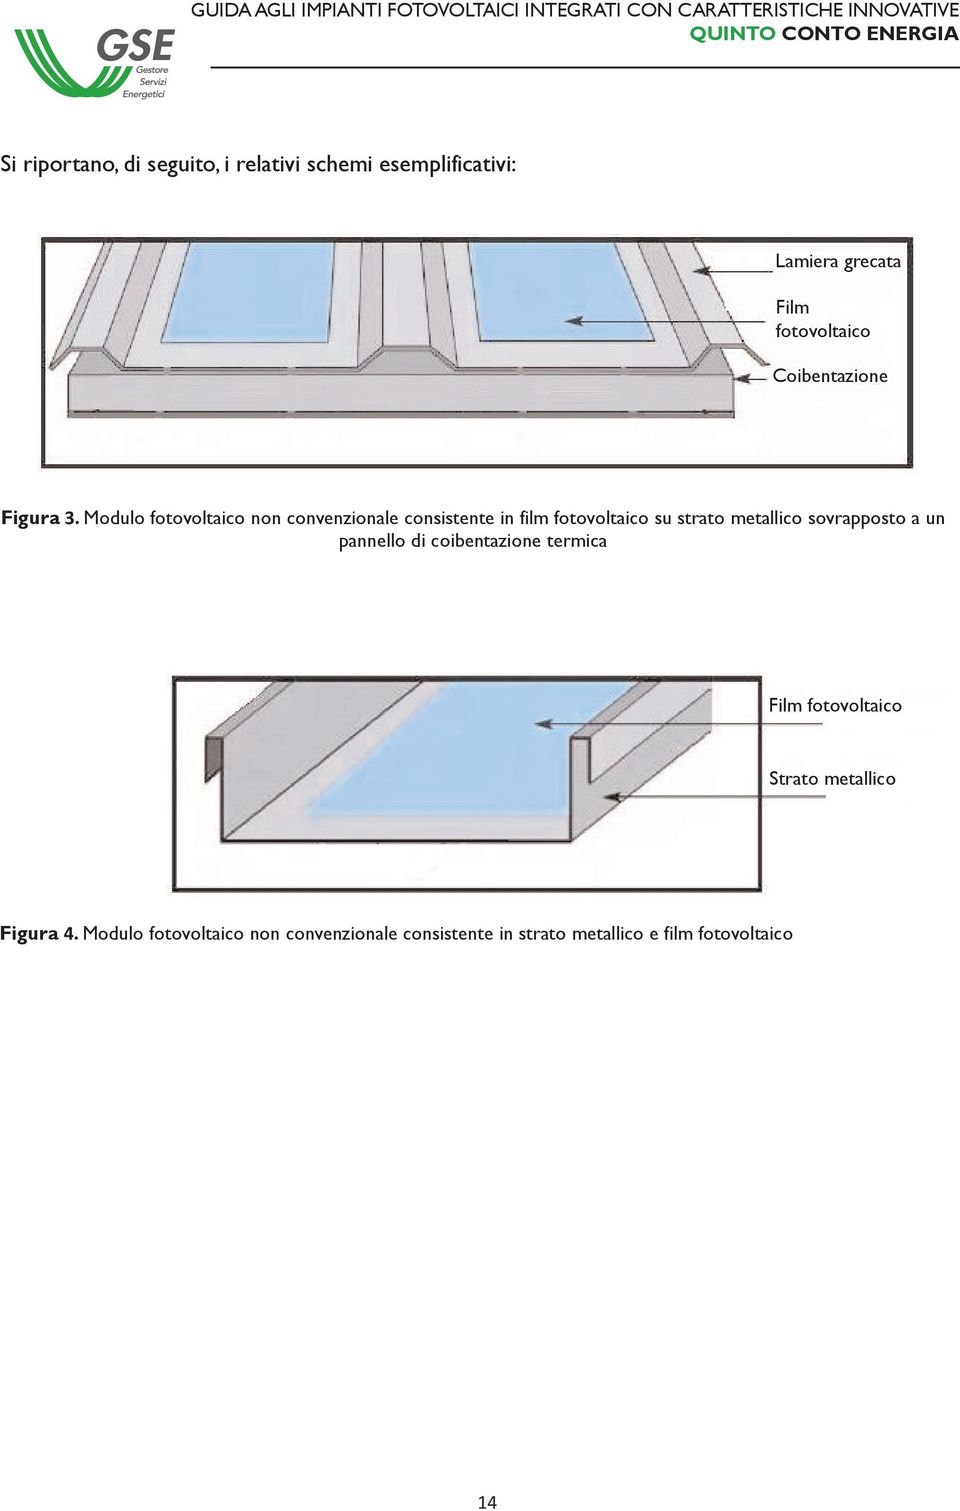 Modulo fotovoltaico non convenzionale consistente in film fotovoltaico su strato metallico